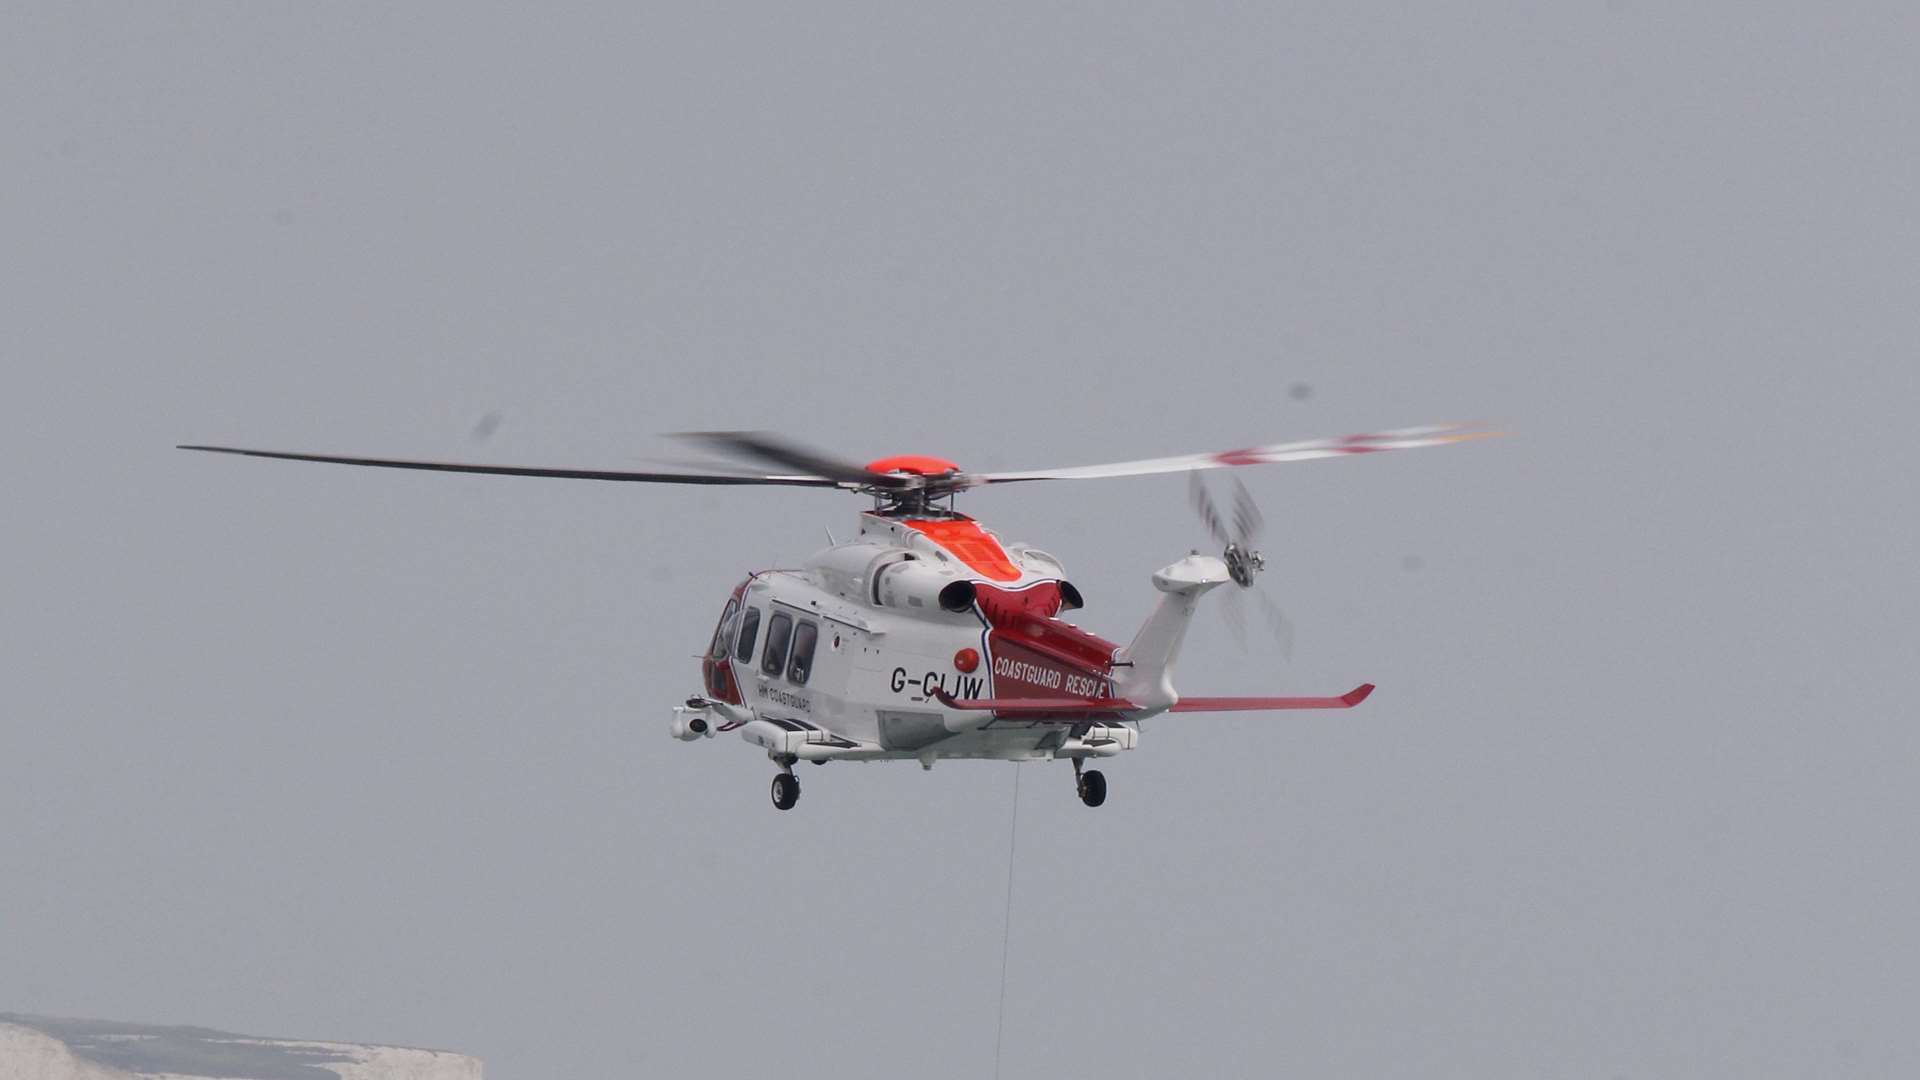 Maritime & Coastguard Agency helicopter. Stock image.